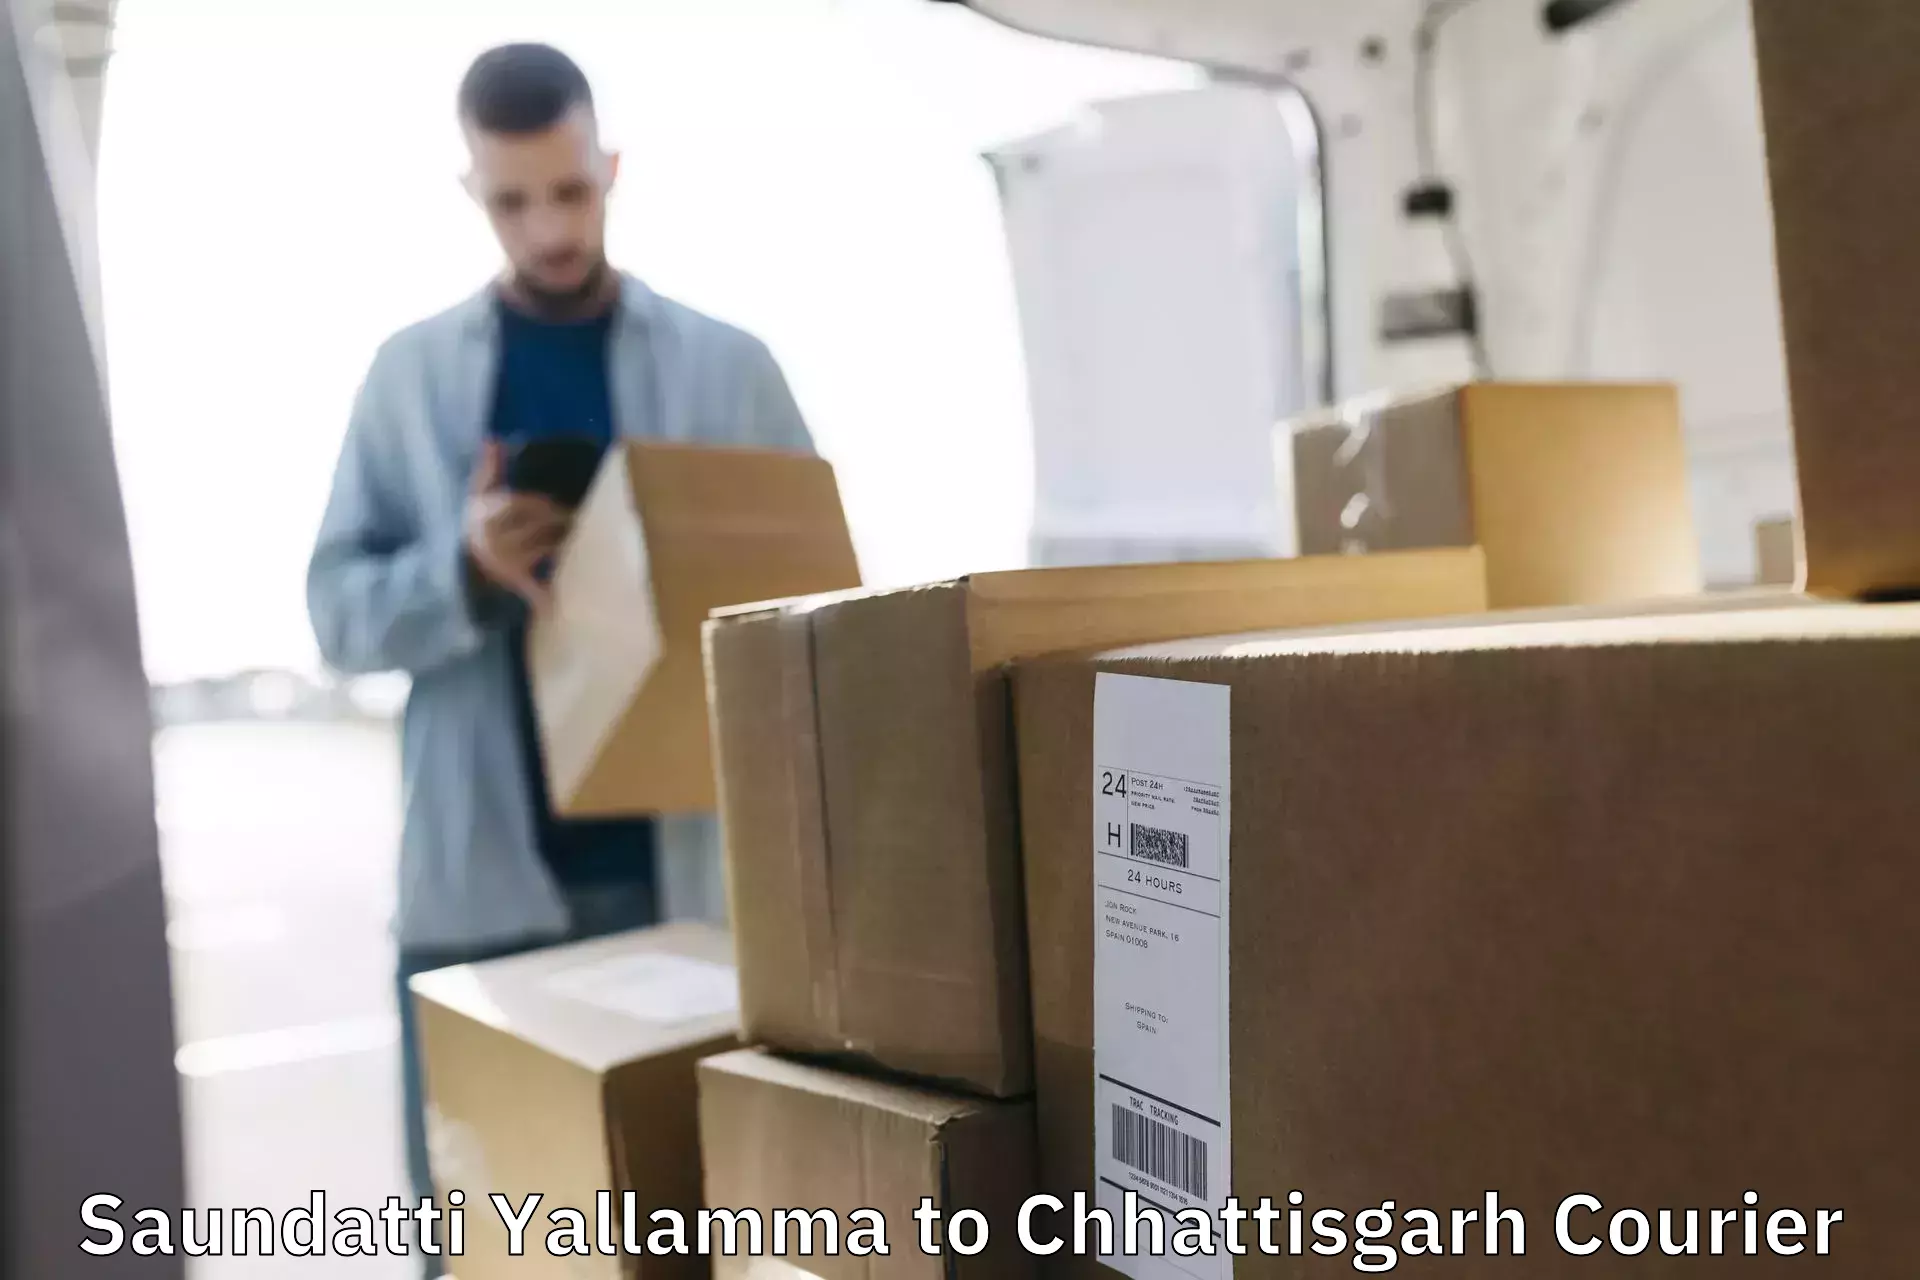 Corporate courier solutions Saundatti Yallamma to Raigarh Chhattisgarh